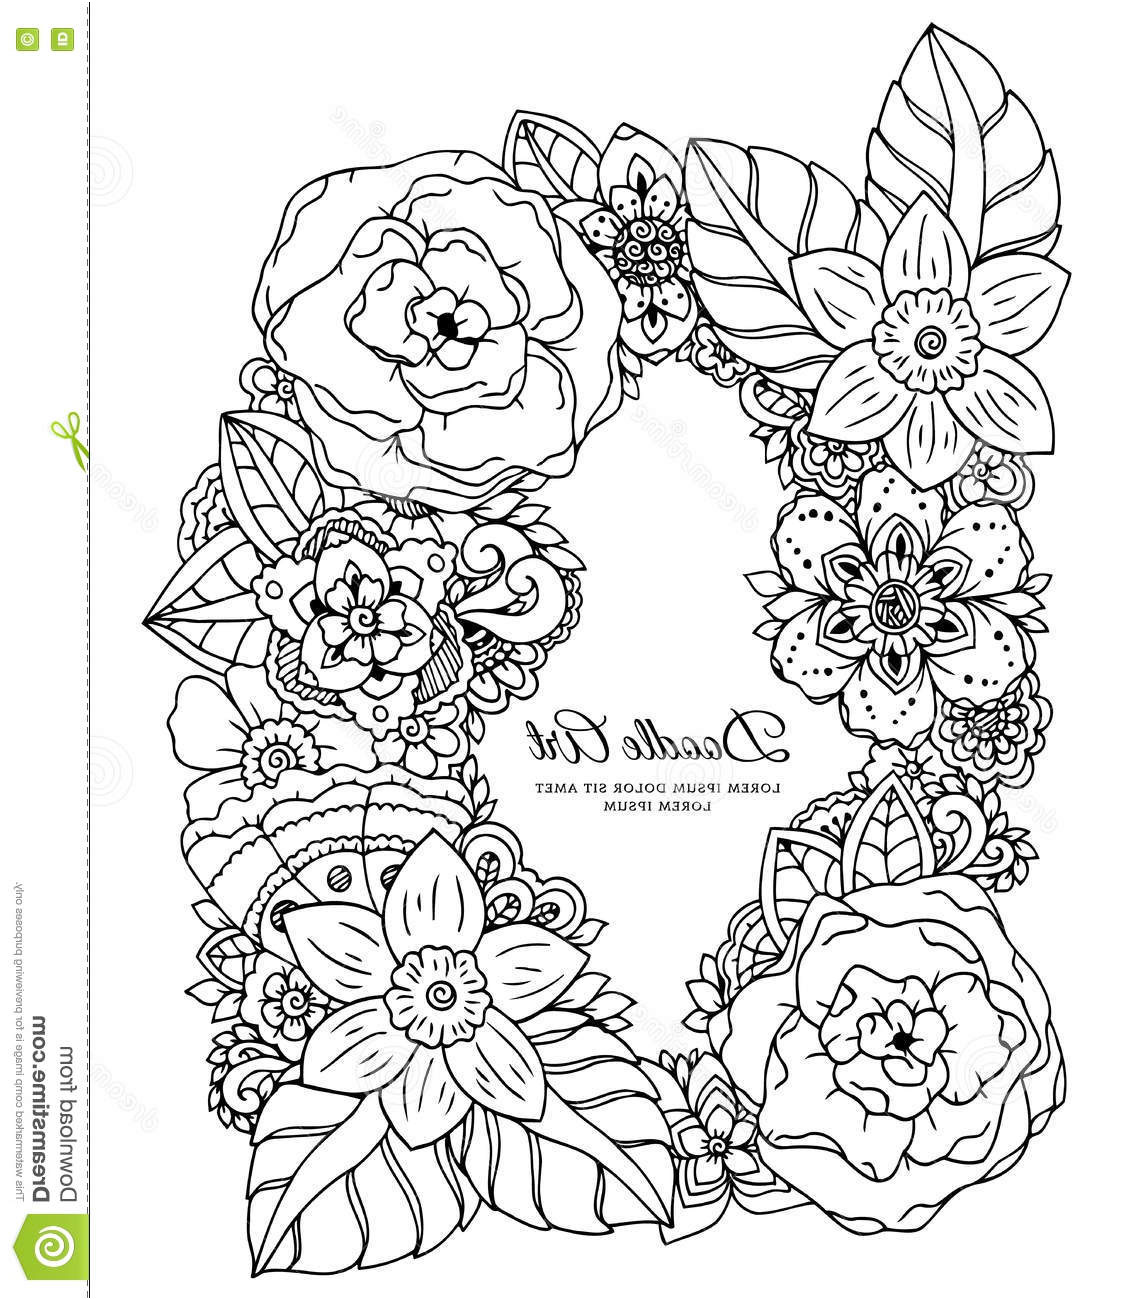 illustration stock illustration de vecteur cadre floral dessin de griffonnage anti effort de livre de coloriage pour des adultes exercices image